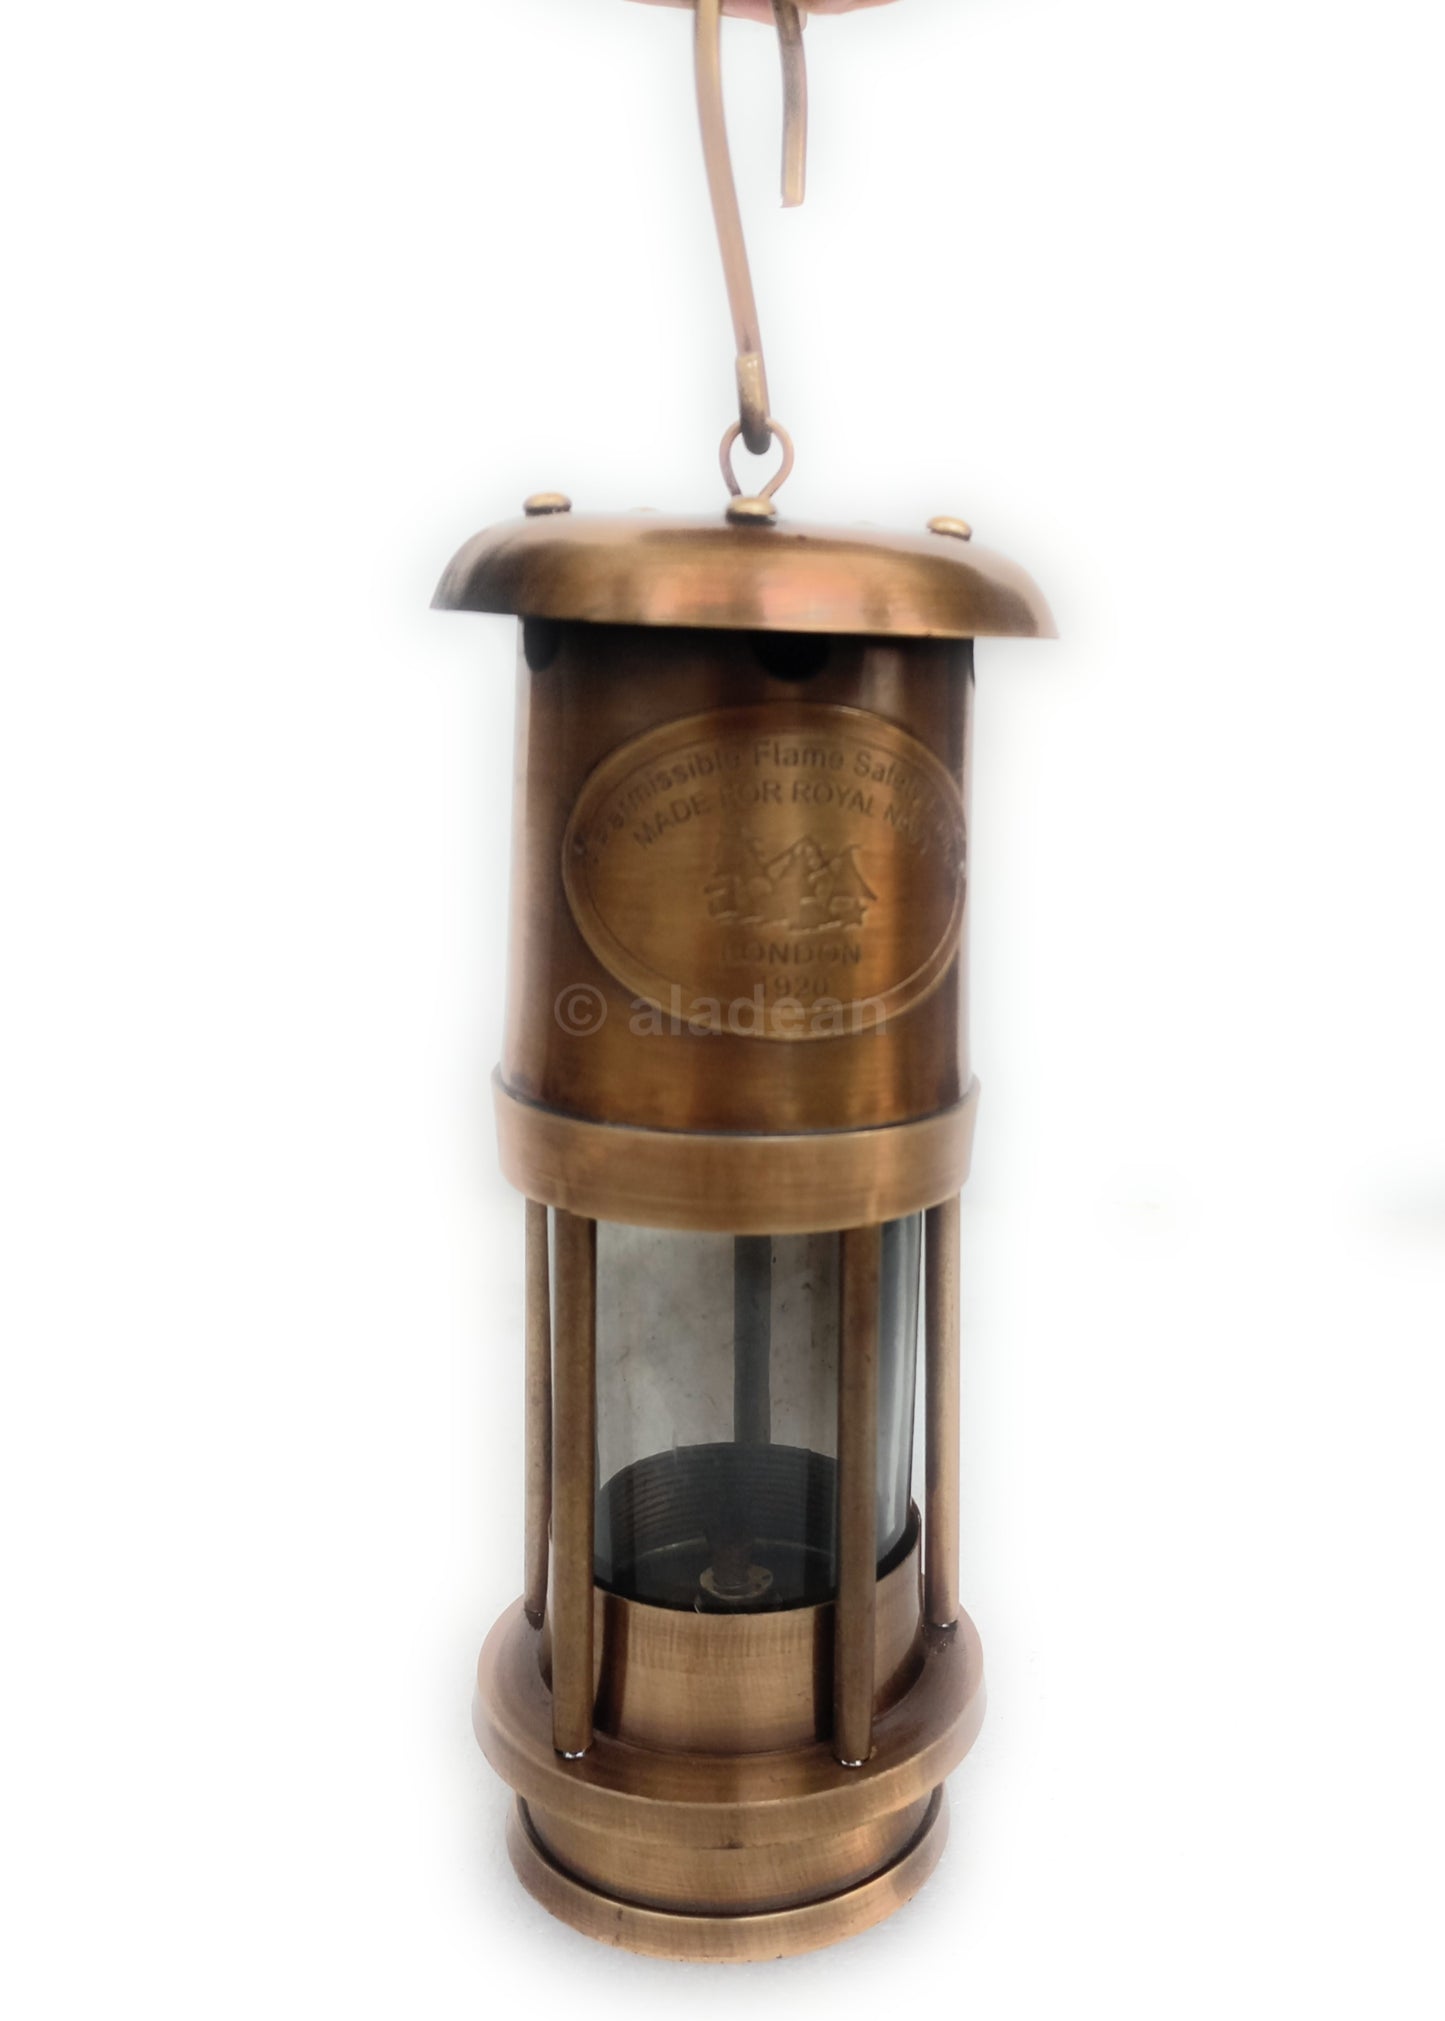 Bergmannslampe 16 cm – ölbetriebene Hurrikan-Lampe im rustikalen Vintage-Look, Camping-Laterne – Nachbildung der Royal Navy, Einweihungs-Tischdekoration, Geschenke für Sie und Ihn